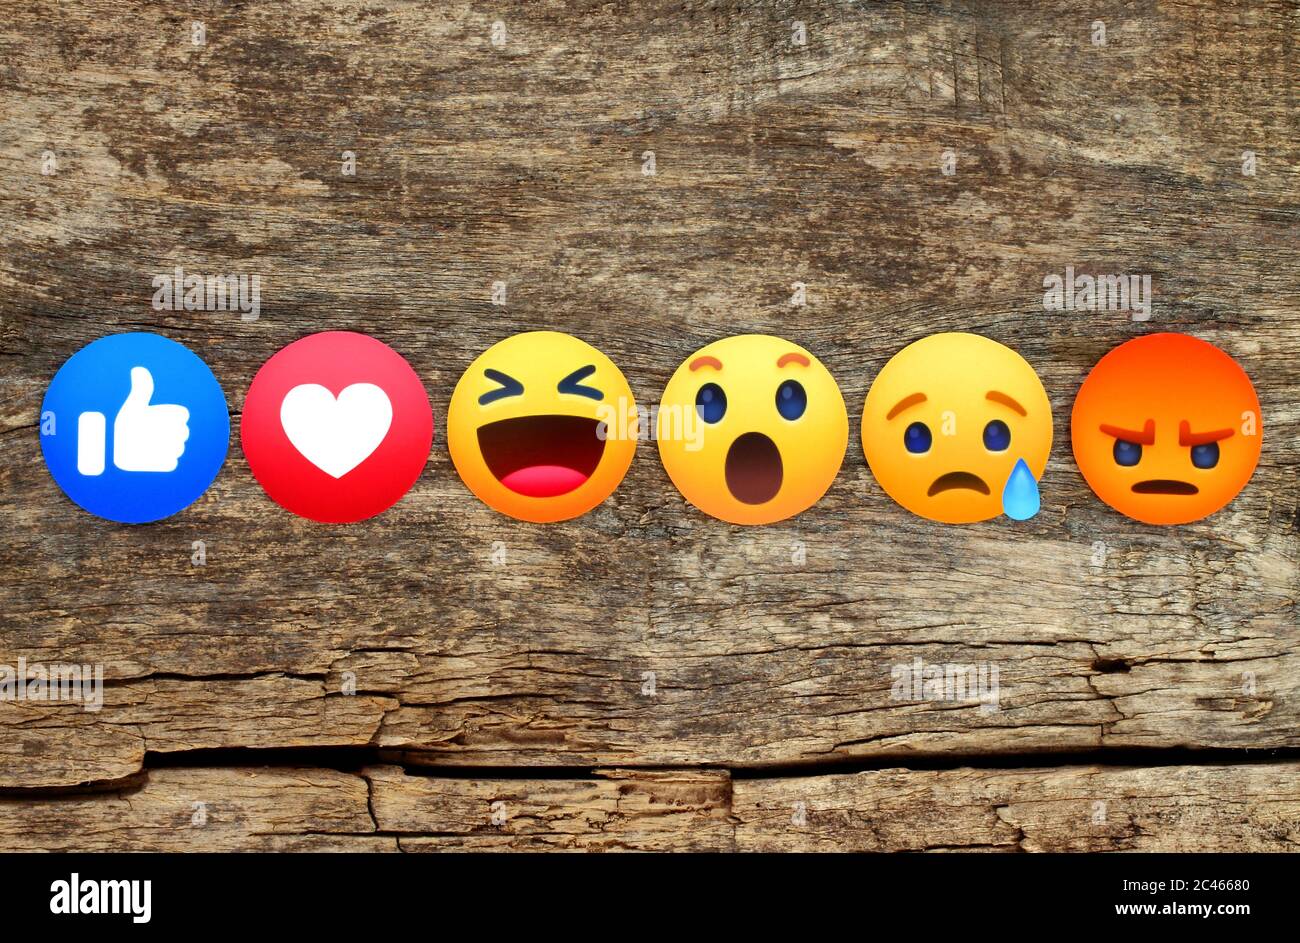 Kiev, Ukraine - 10 mai 2019: Nouveau Facebook Like Button 6 empathique réactions Emoji imprimé sur papier et placé sur fond de bois. Facebook est un nous Banque D'Images